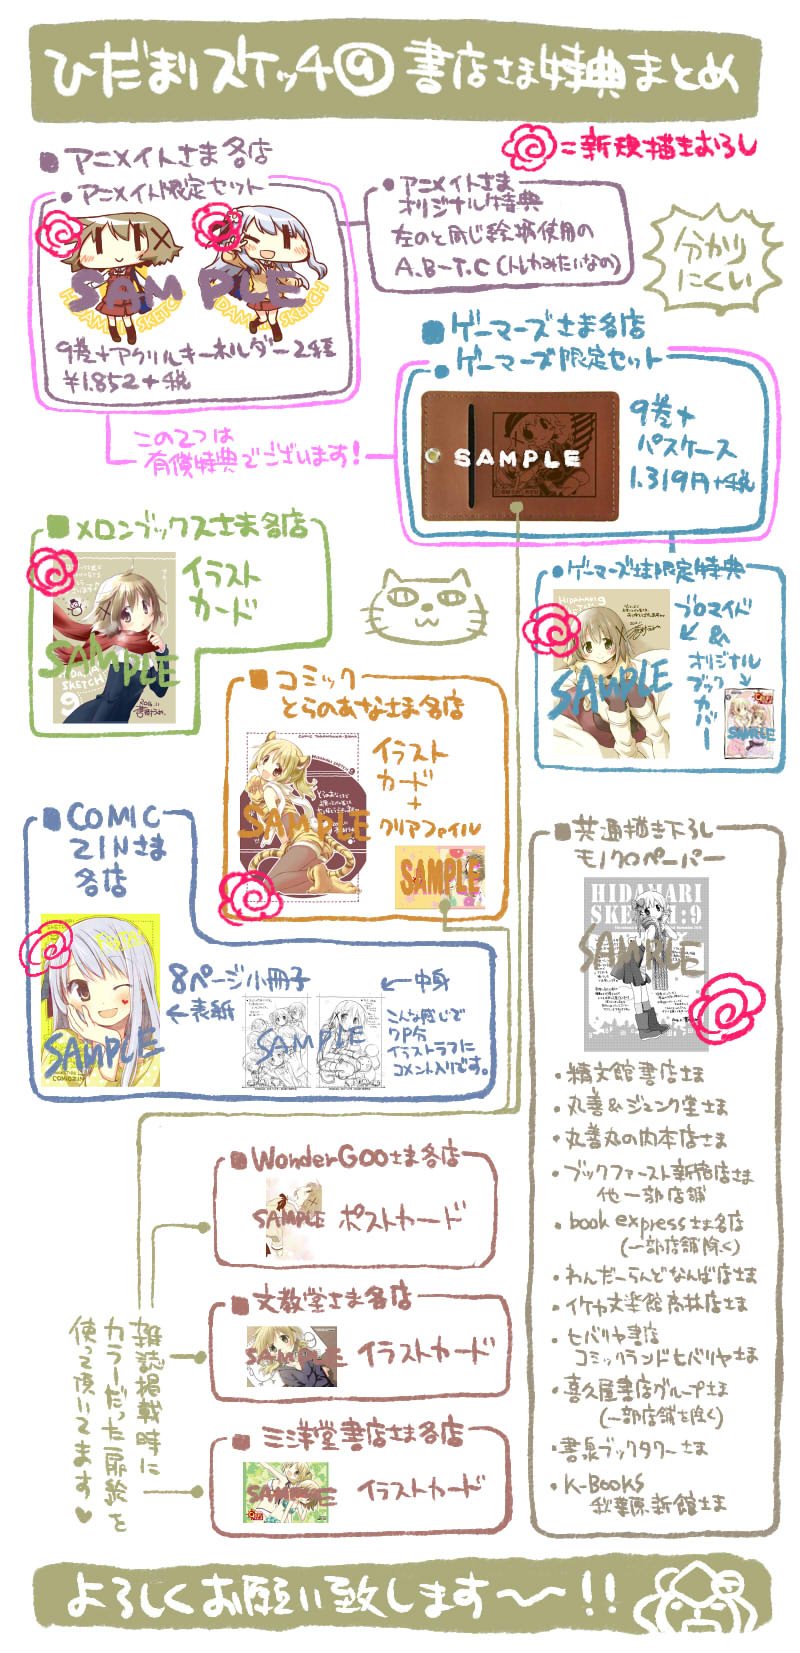 Aokiume 11月26日 土 発売のひだまりスケッチ９巻の書店さま特典をまとめてみました 画像が大きくなってしまったのですがアップできるかな よよよろしくお願いします T Co Bzvjss1tut Twitter